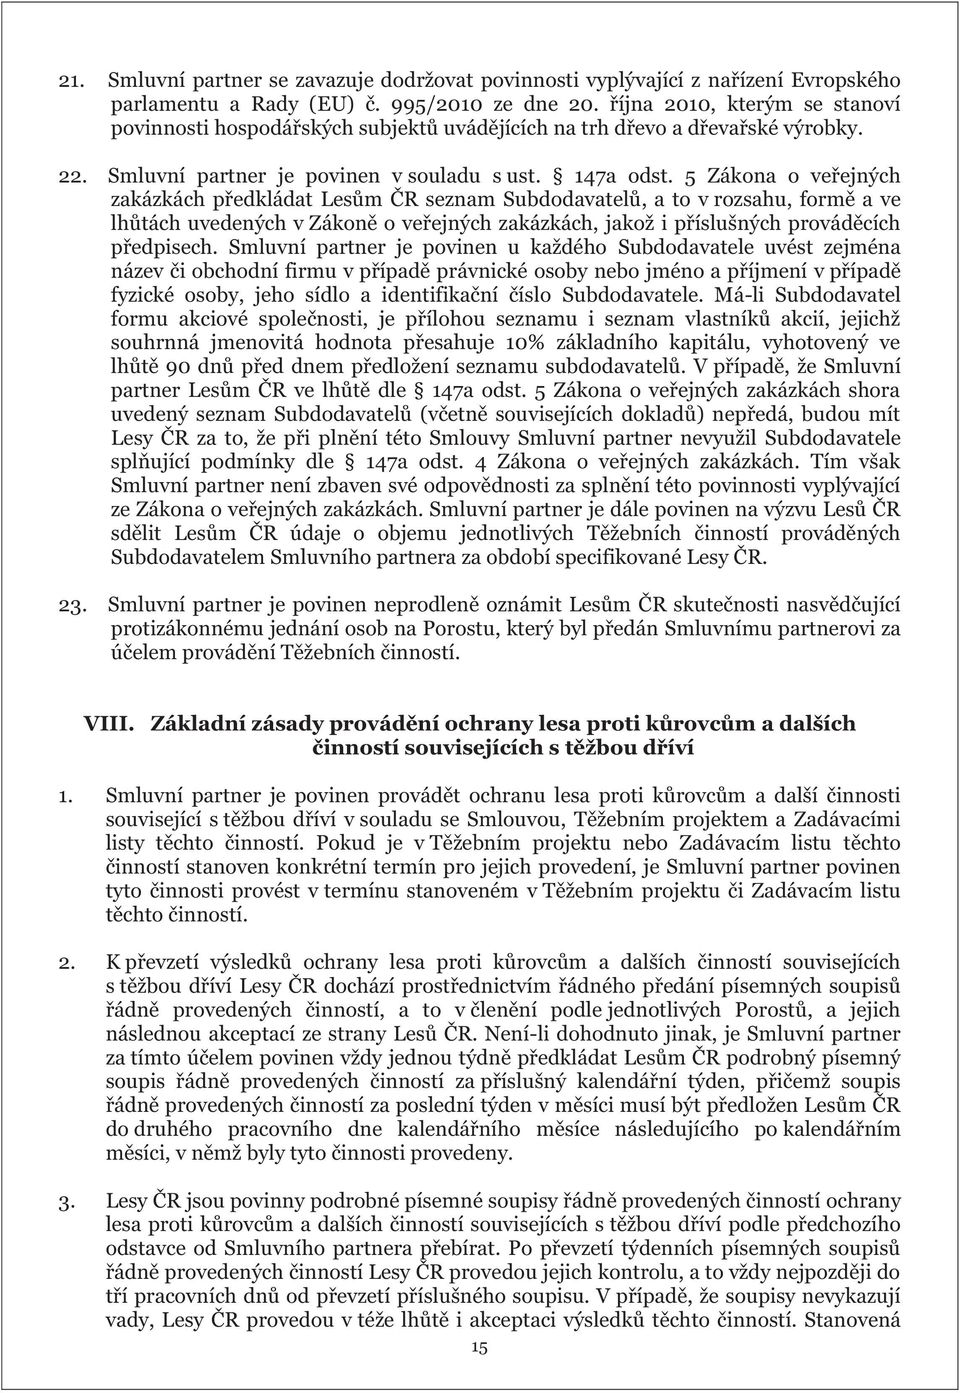 5 Zákona o veřejných zakázkách předkládat Lesům ČR seznam Subdodavatelů, a to v rozsahu, formě a ve lhůtách uvedených v Zákoně o veřejných zakázkách, jakož i příslušných prováděcích předpisech.